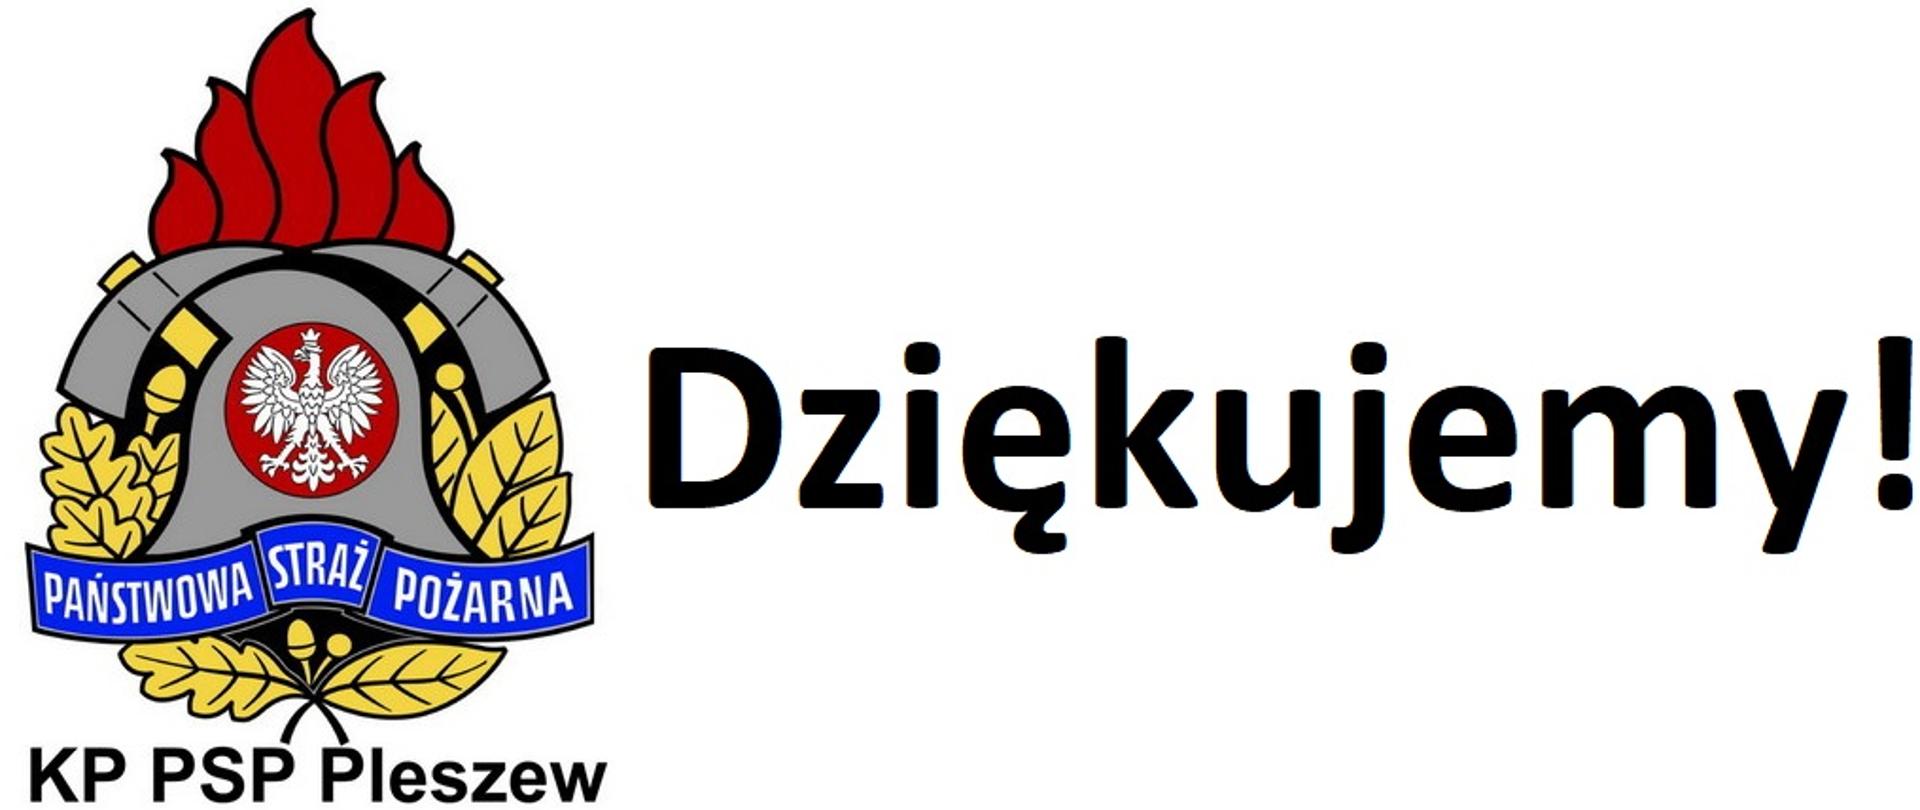 Logotyp przedstawiający logo Państwowej Straży Pożarnej u dołu z dopiskiem KP PSP Pleszew po prawej stronie logo znajduje się duży napis dziękujemy z wykrzyknikiem